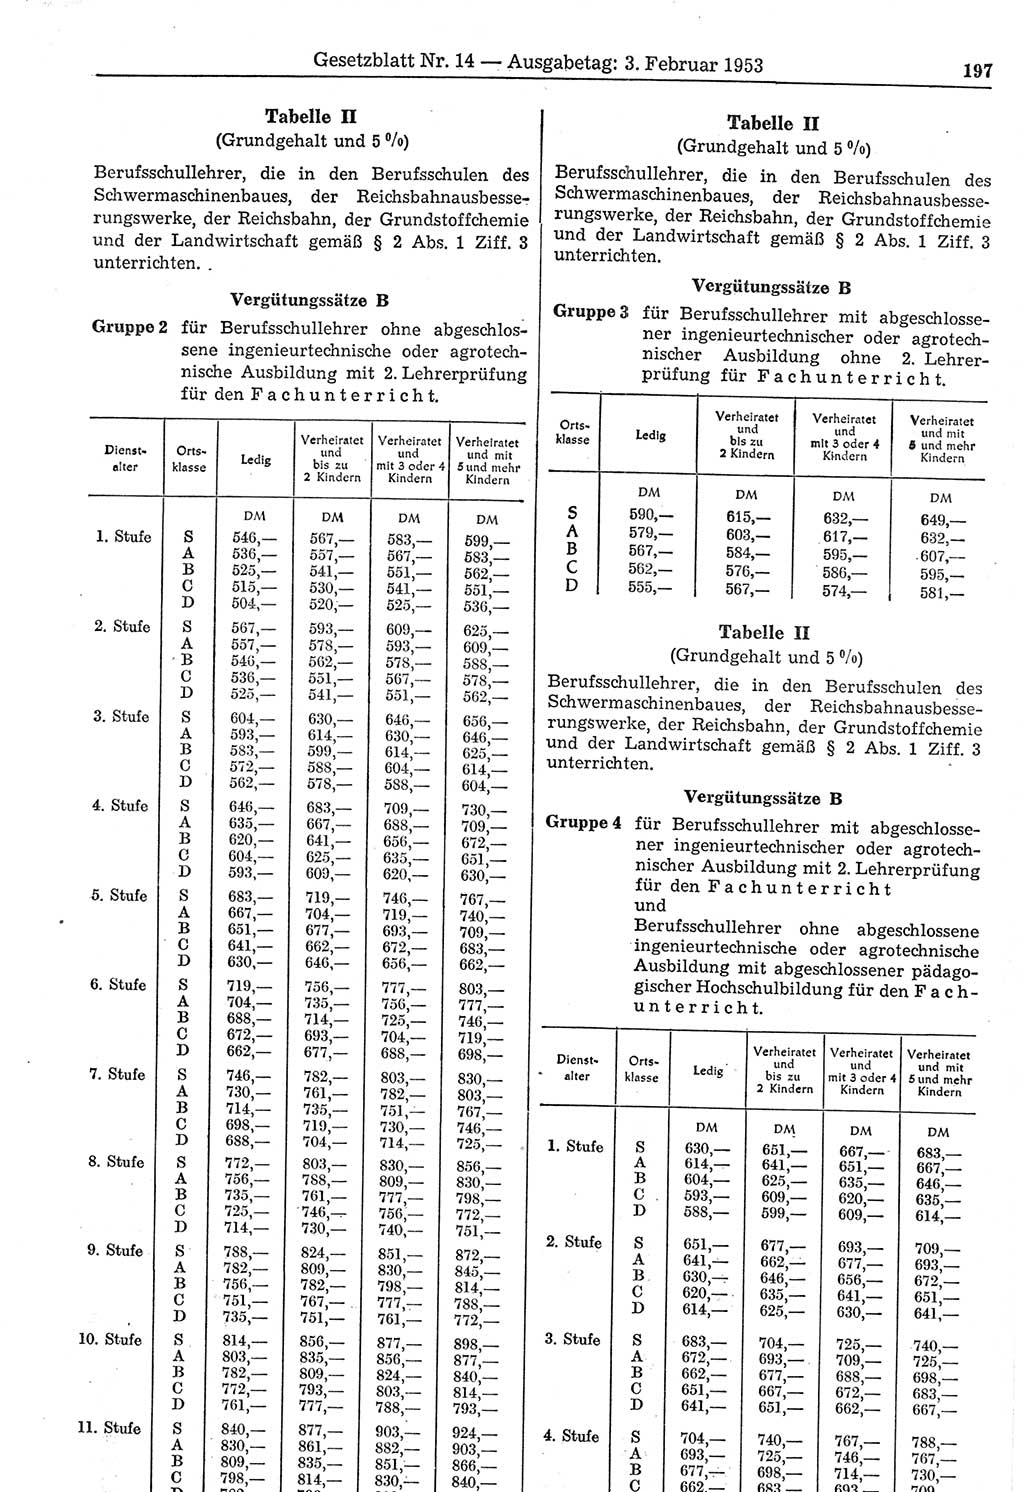 Gesetzblatt (GBl.) der Deutschen Demokratischen Republik (DDR) 1953, Seite 197 (GBl. DDR 1953, S. 197)